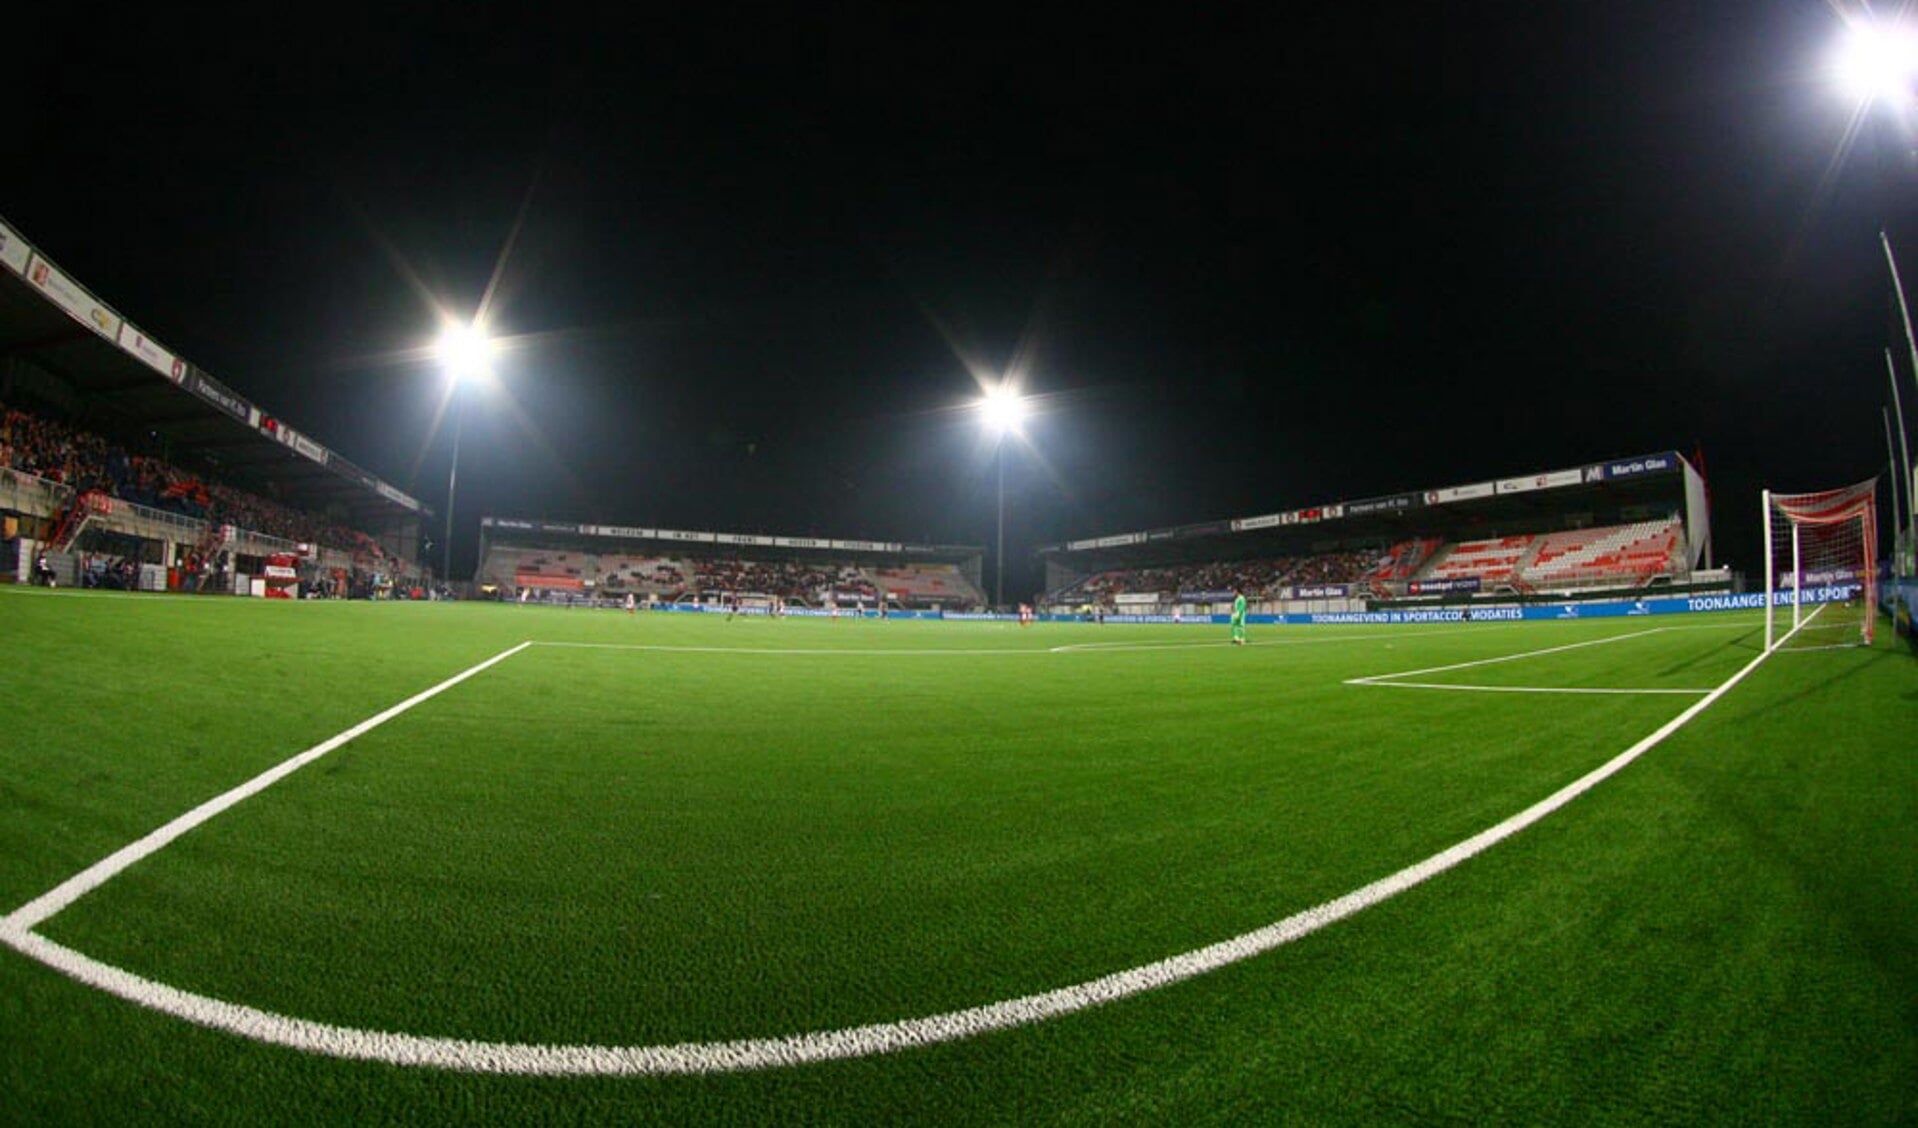 Het Frans Heesen Stadion. (Foto: Hans van der Poel)